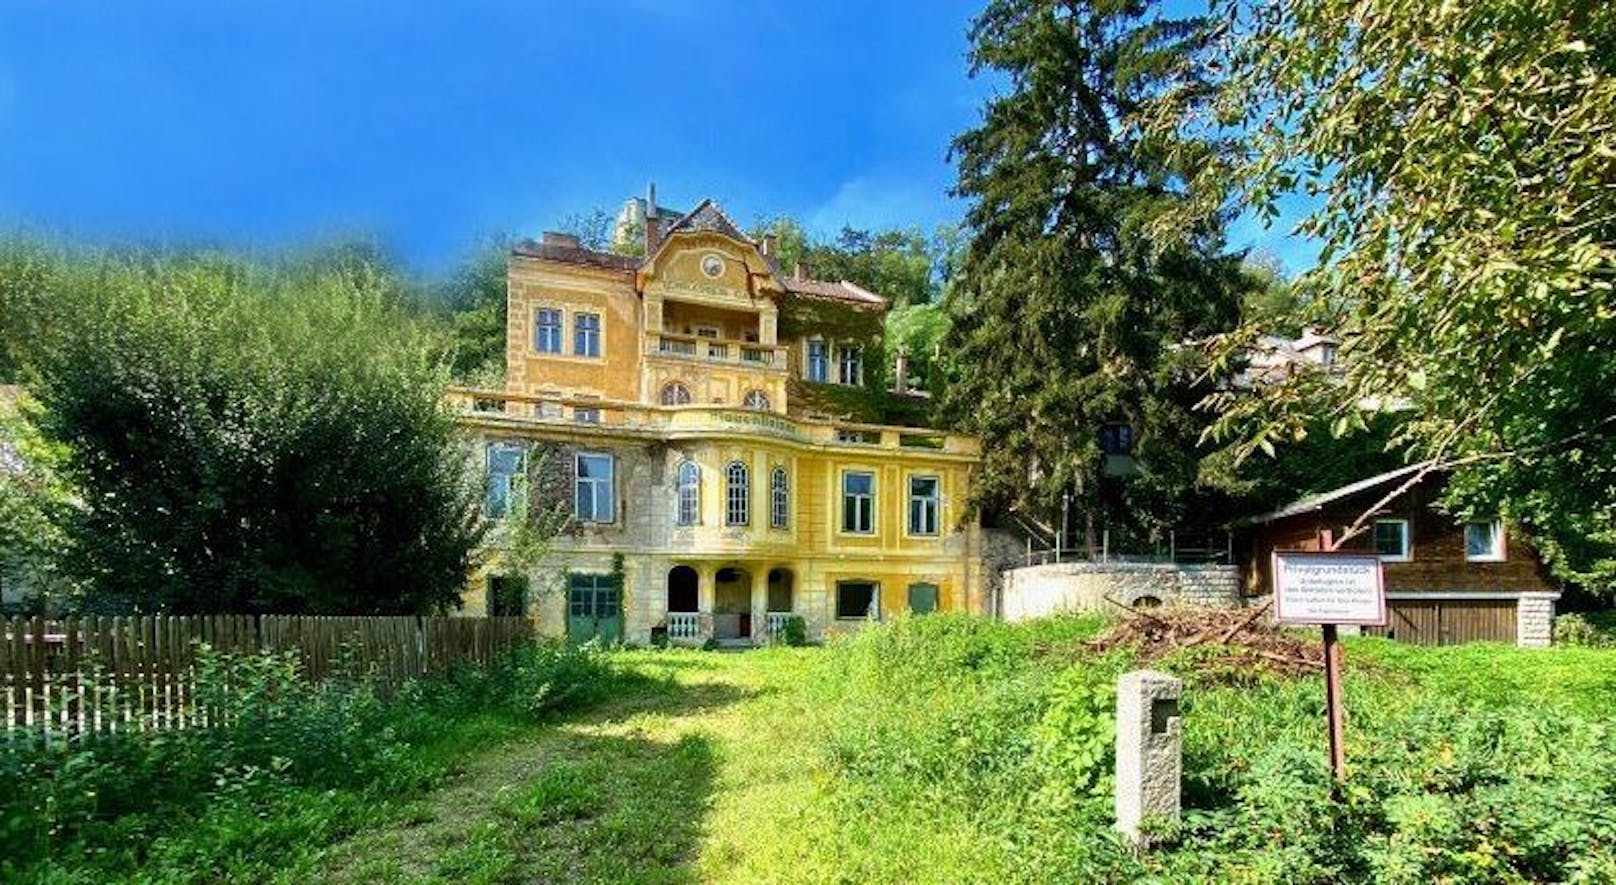 Villa kostet nur 155.000 Euro – doch niemand will sie